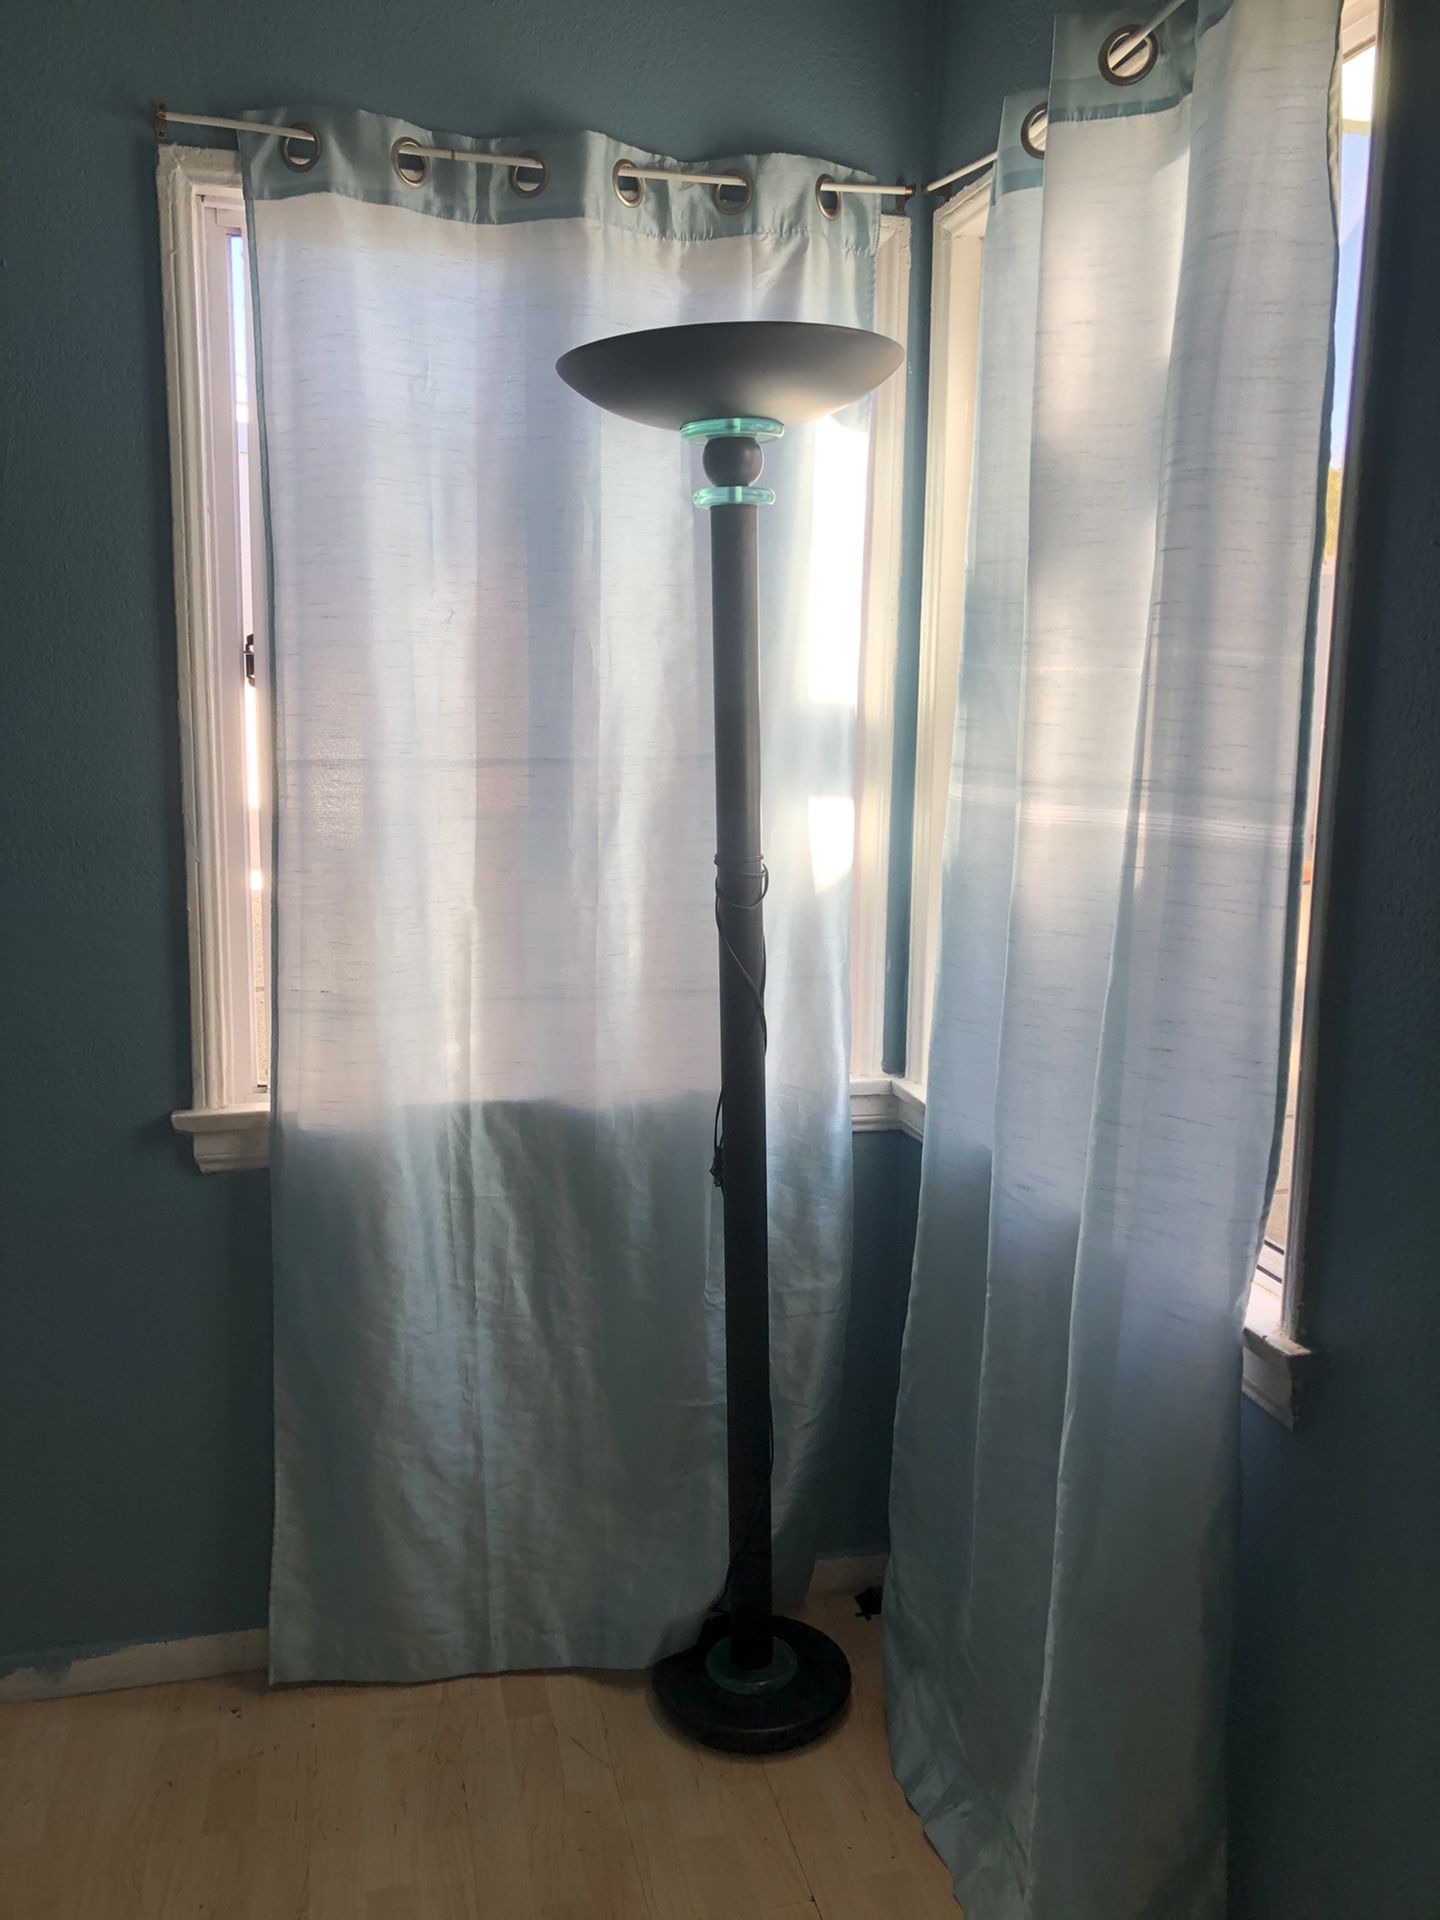 $5 Lamp